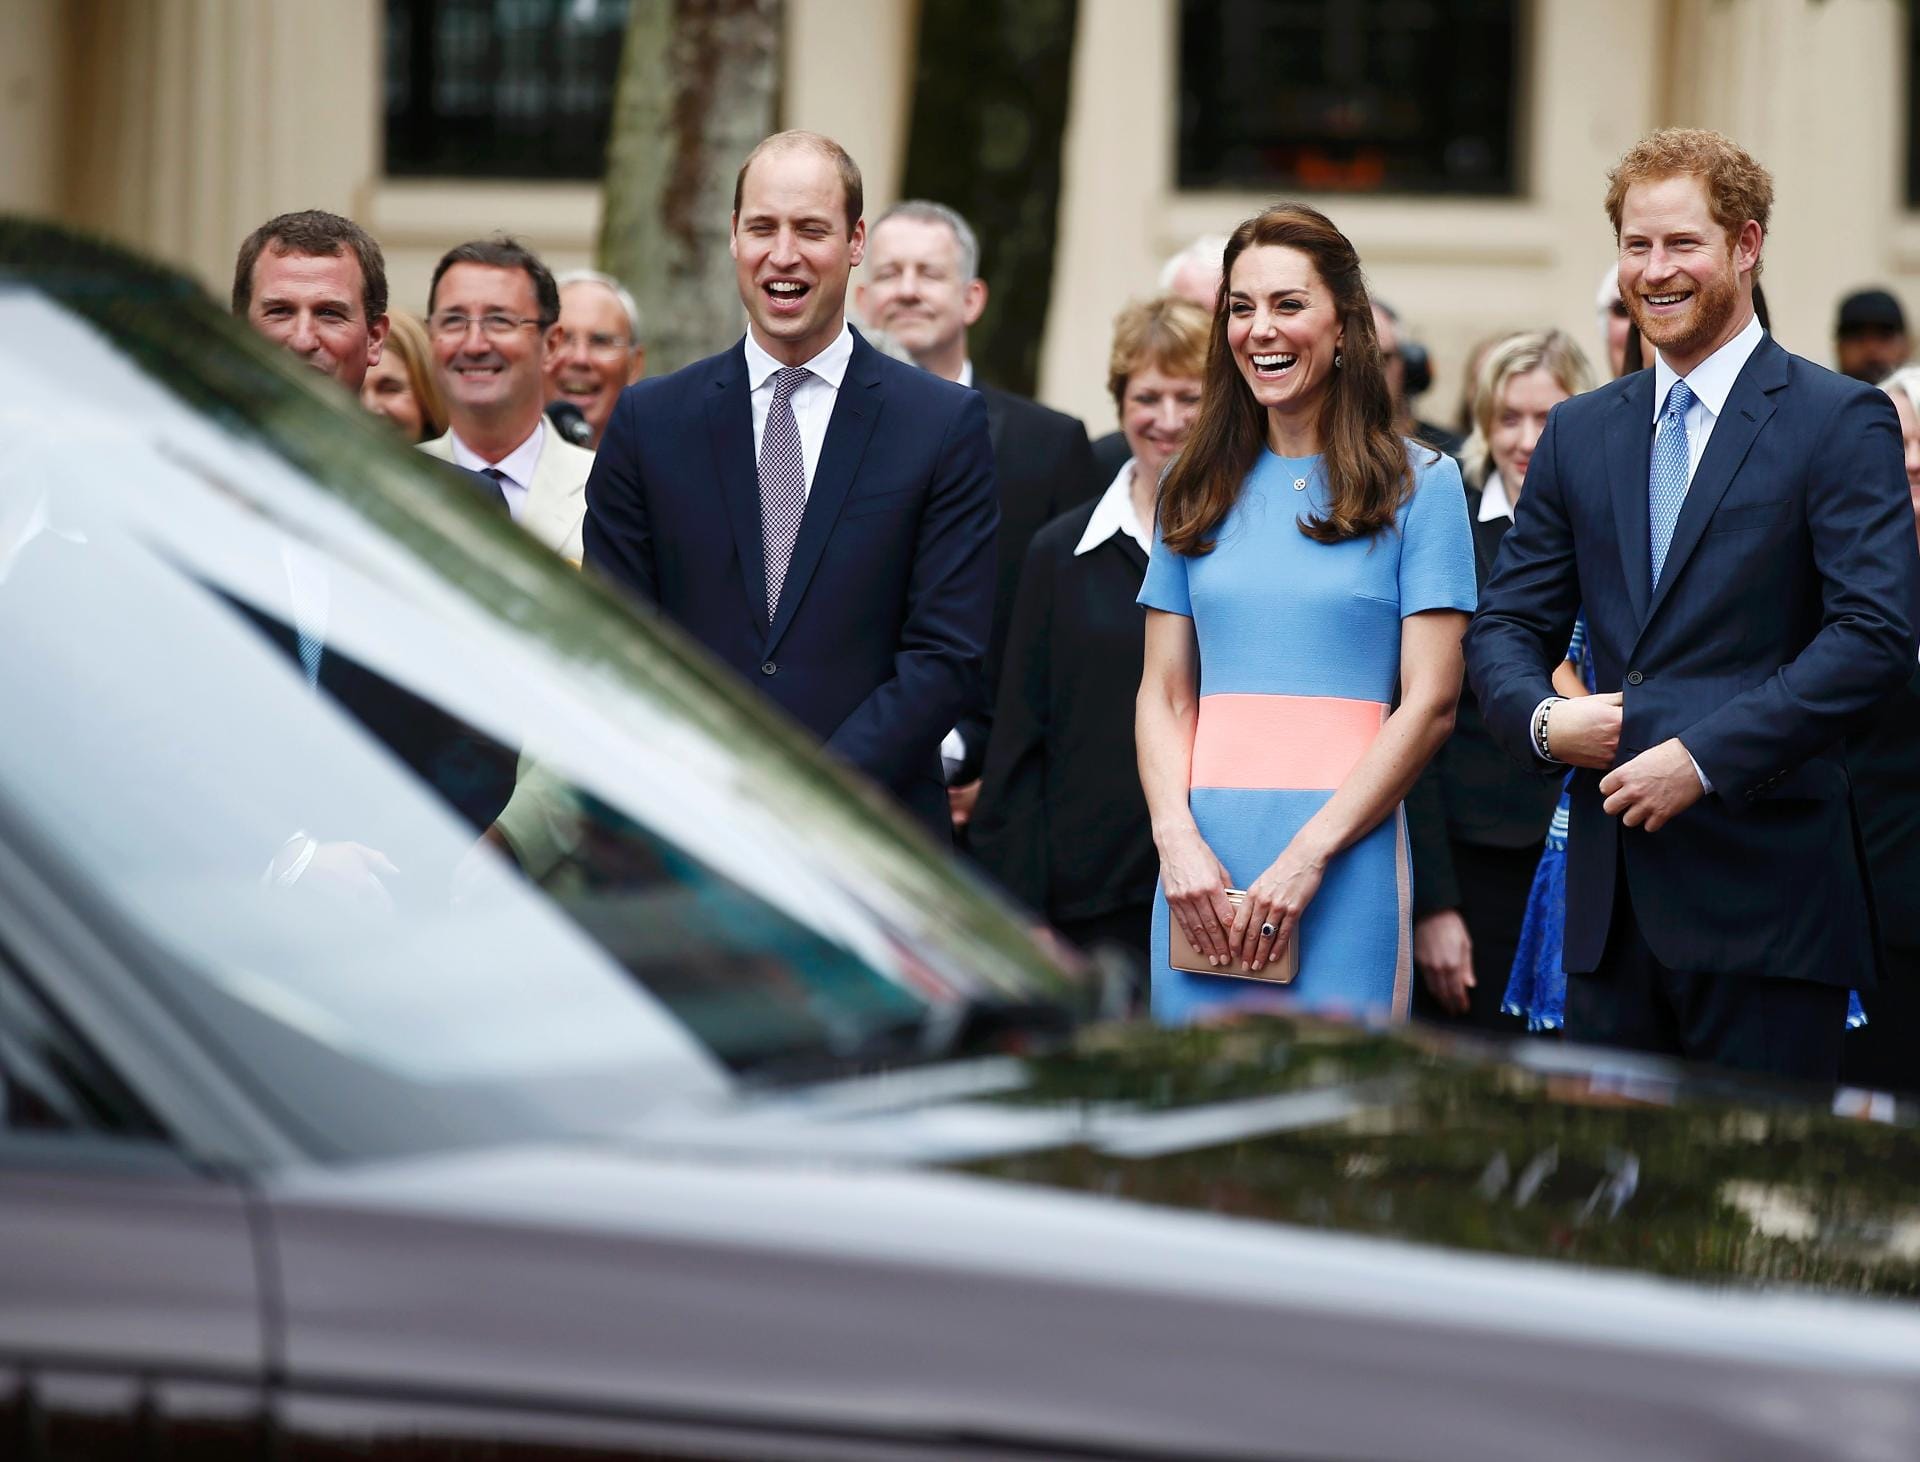 Prinz William, Herzogin Kate und Prinz Harry standen am Straßenrand und winkten ihrer Queen.